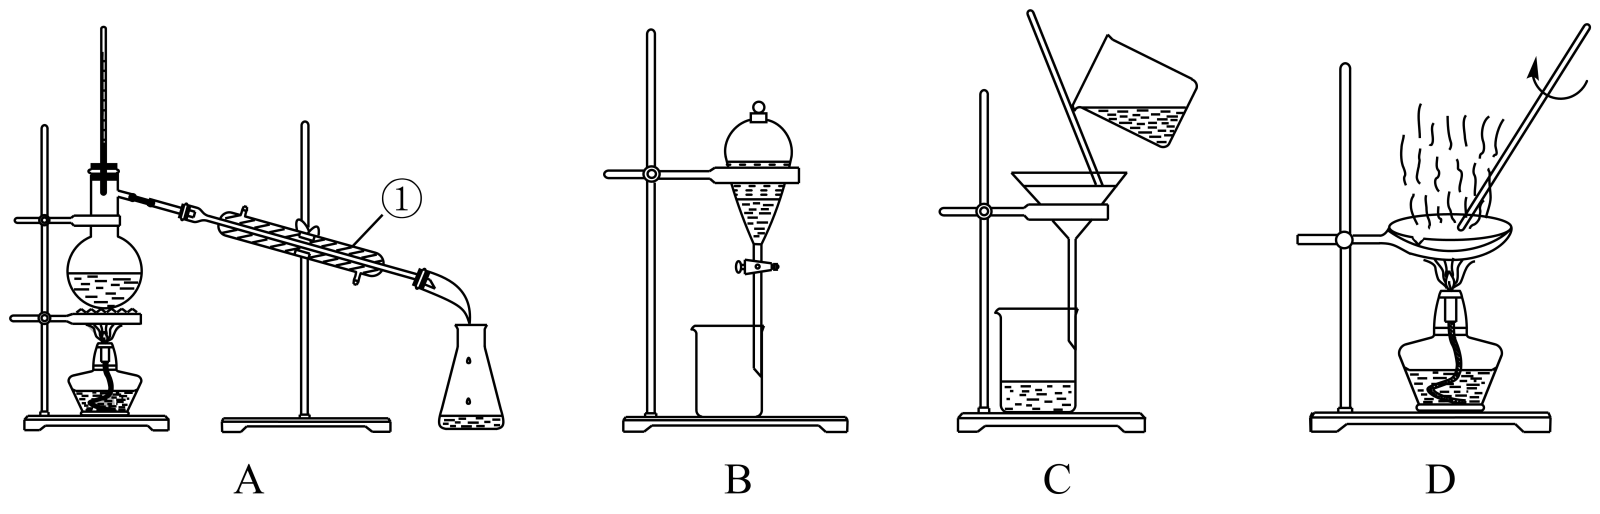 化学实验基础 物质的分离,提纯 物质分离,提纯的常见物理方法(1)装置a